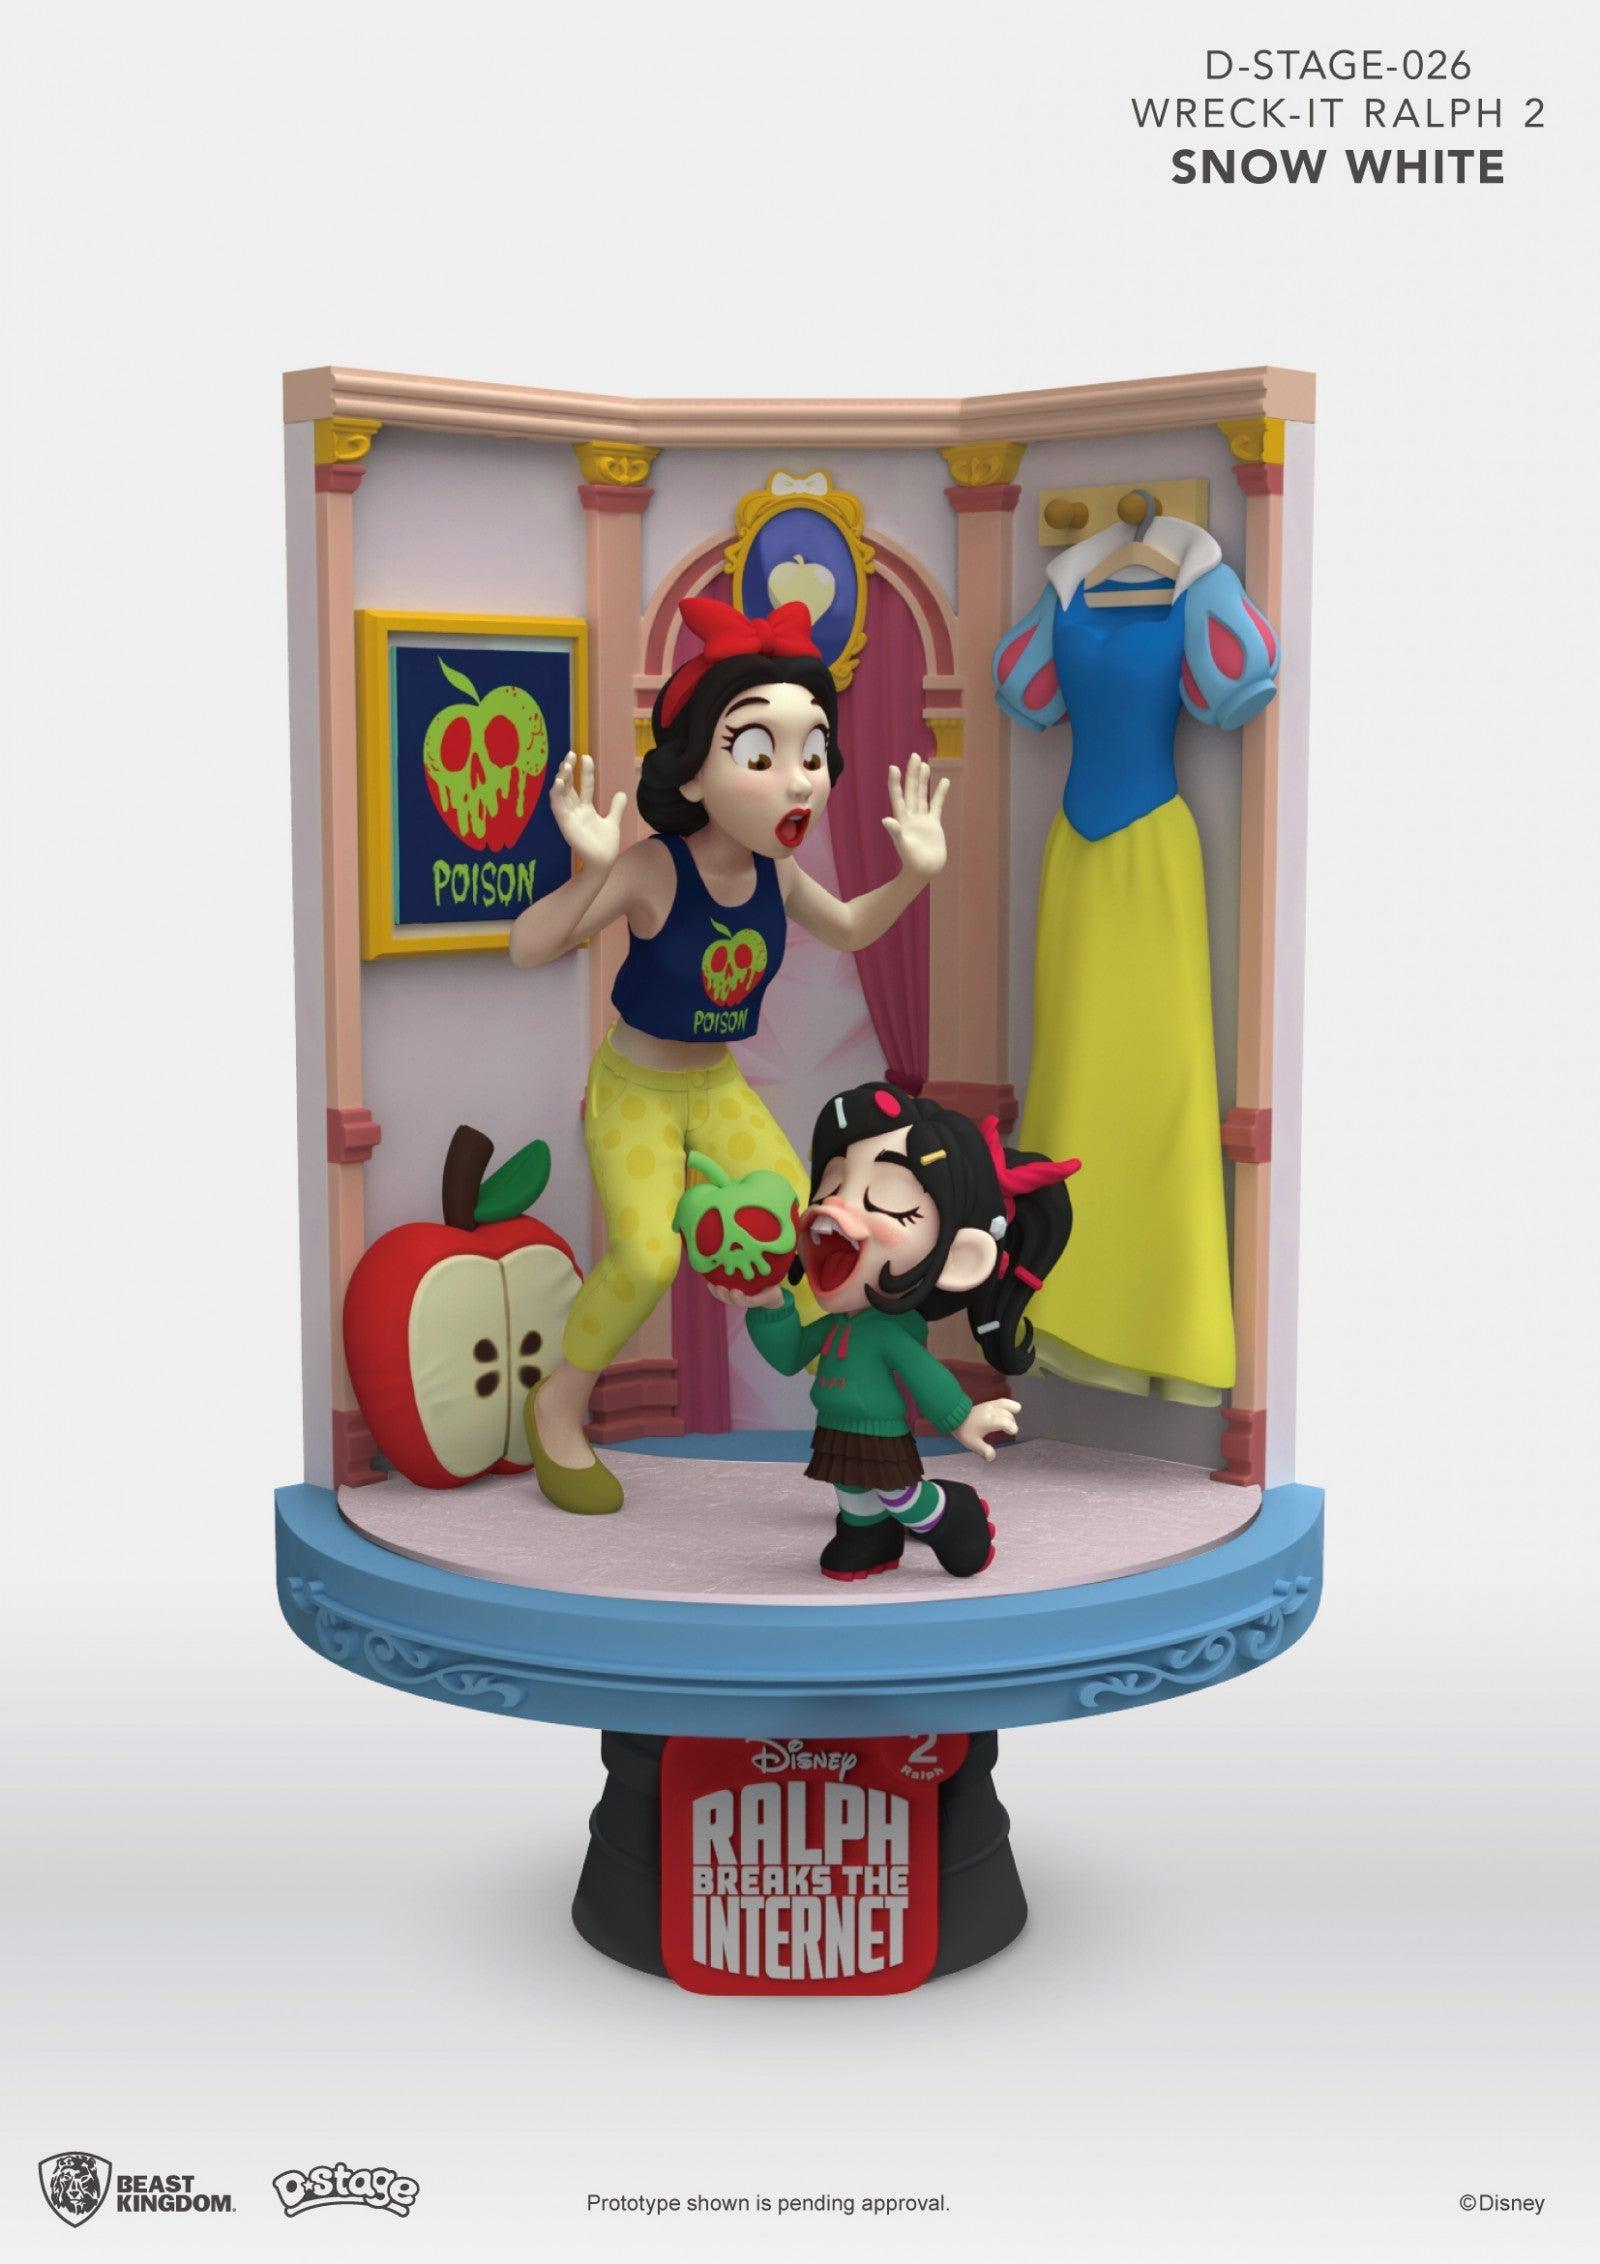 VR-73747 Beast Kingdom D Stage Disney Wreck It Ralph 2 Snow White - Beast Kingdom - Titan Pop Culture